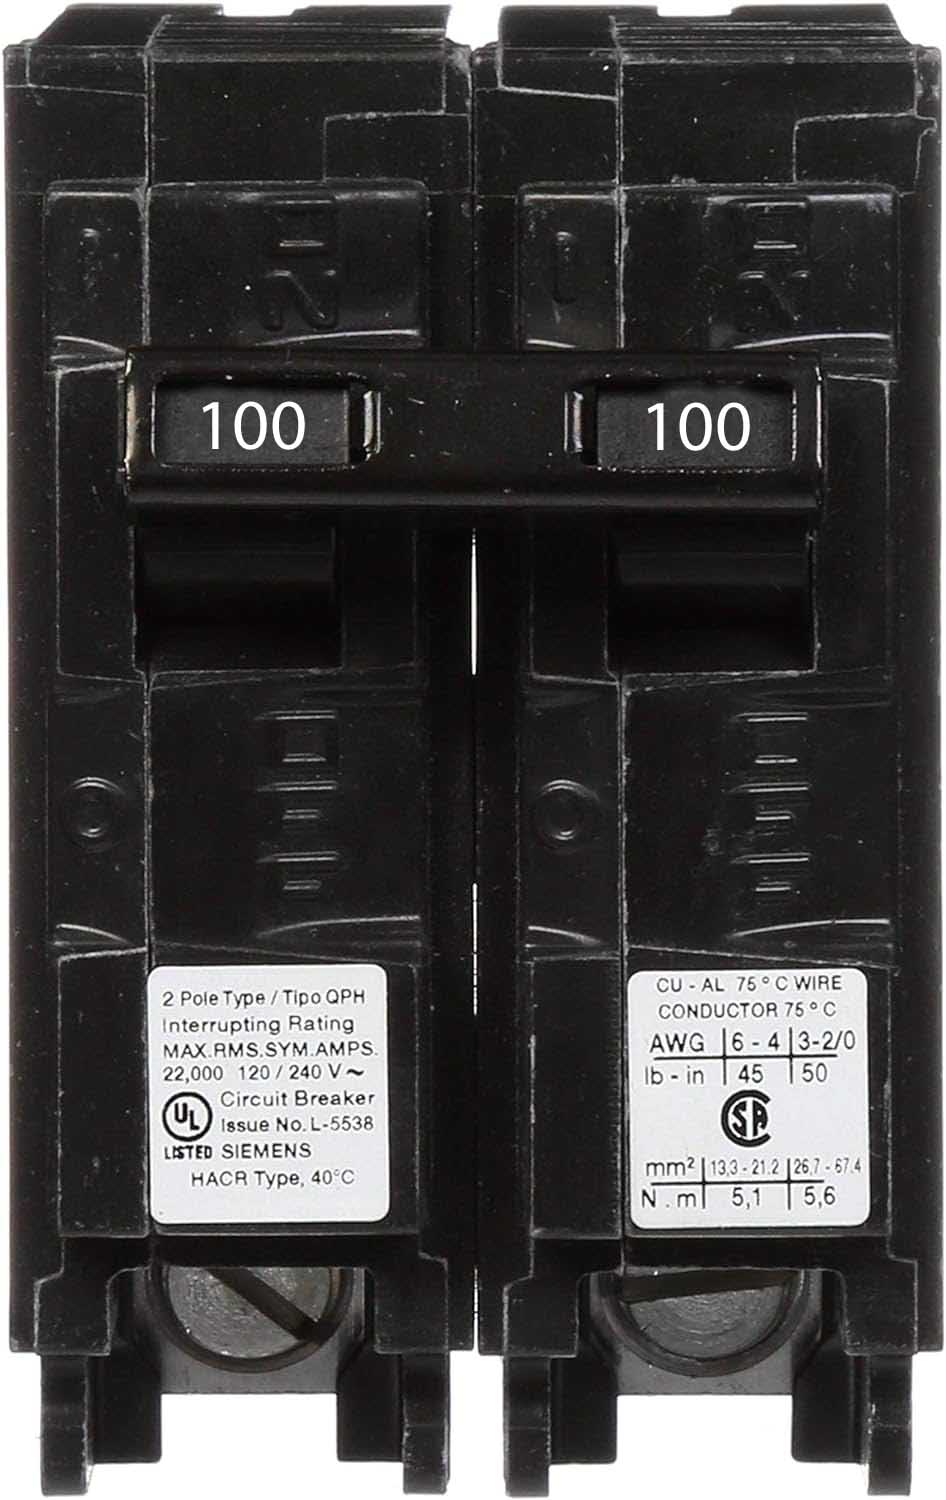 Q2100H - Siemens 100 Amp 2 Pole 240 Volt Molded Case Circuit Breaker